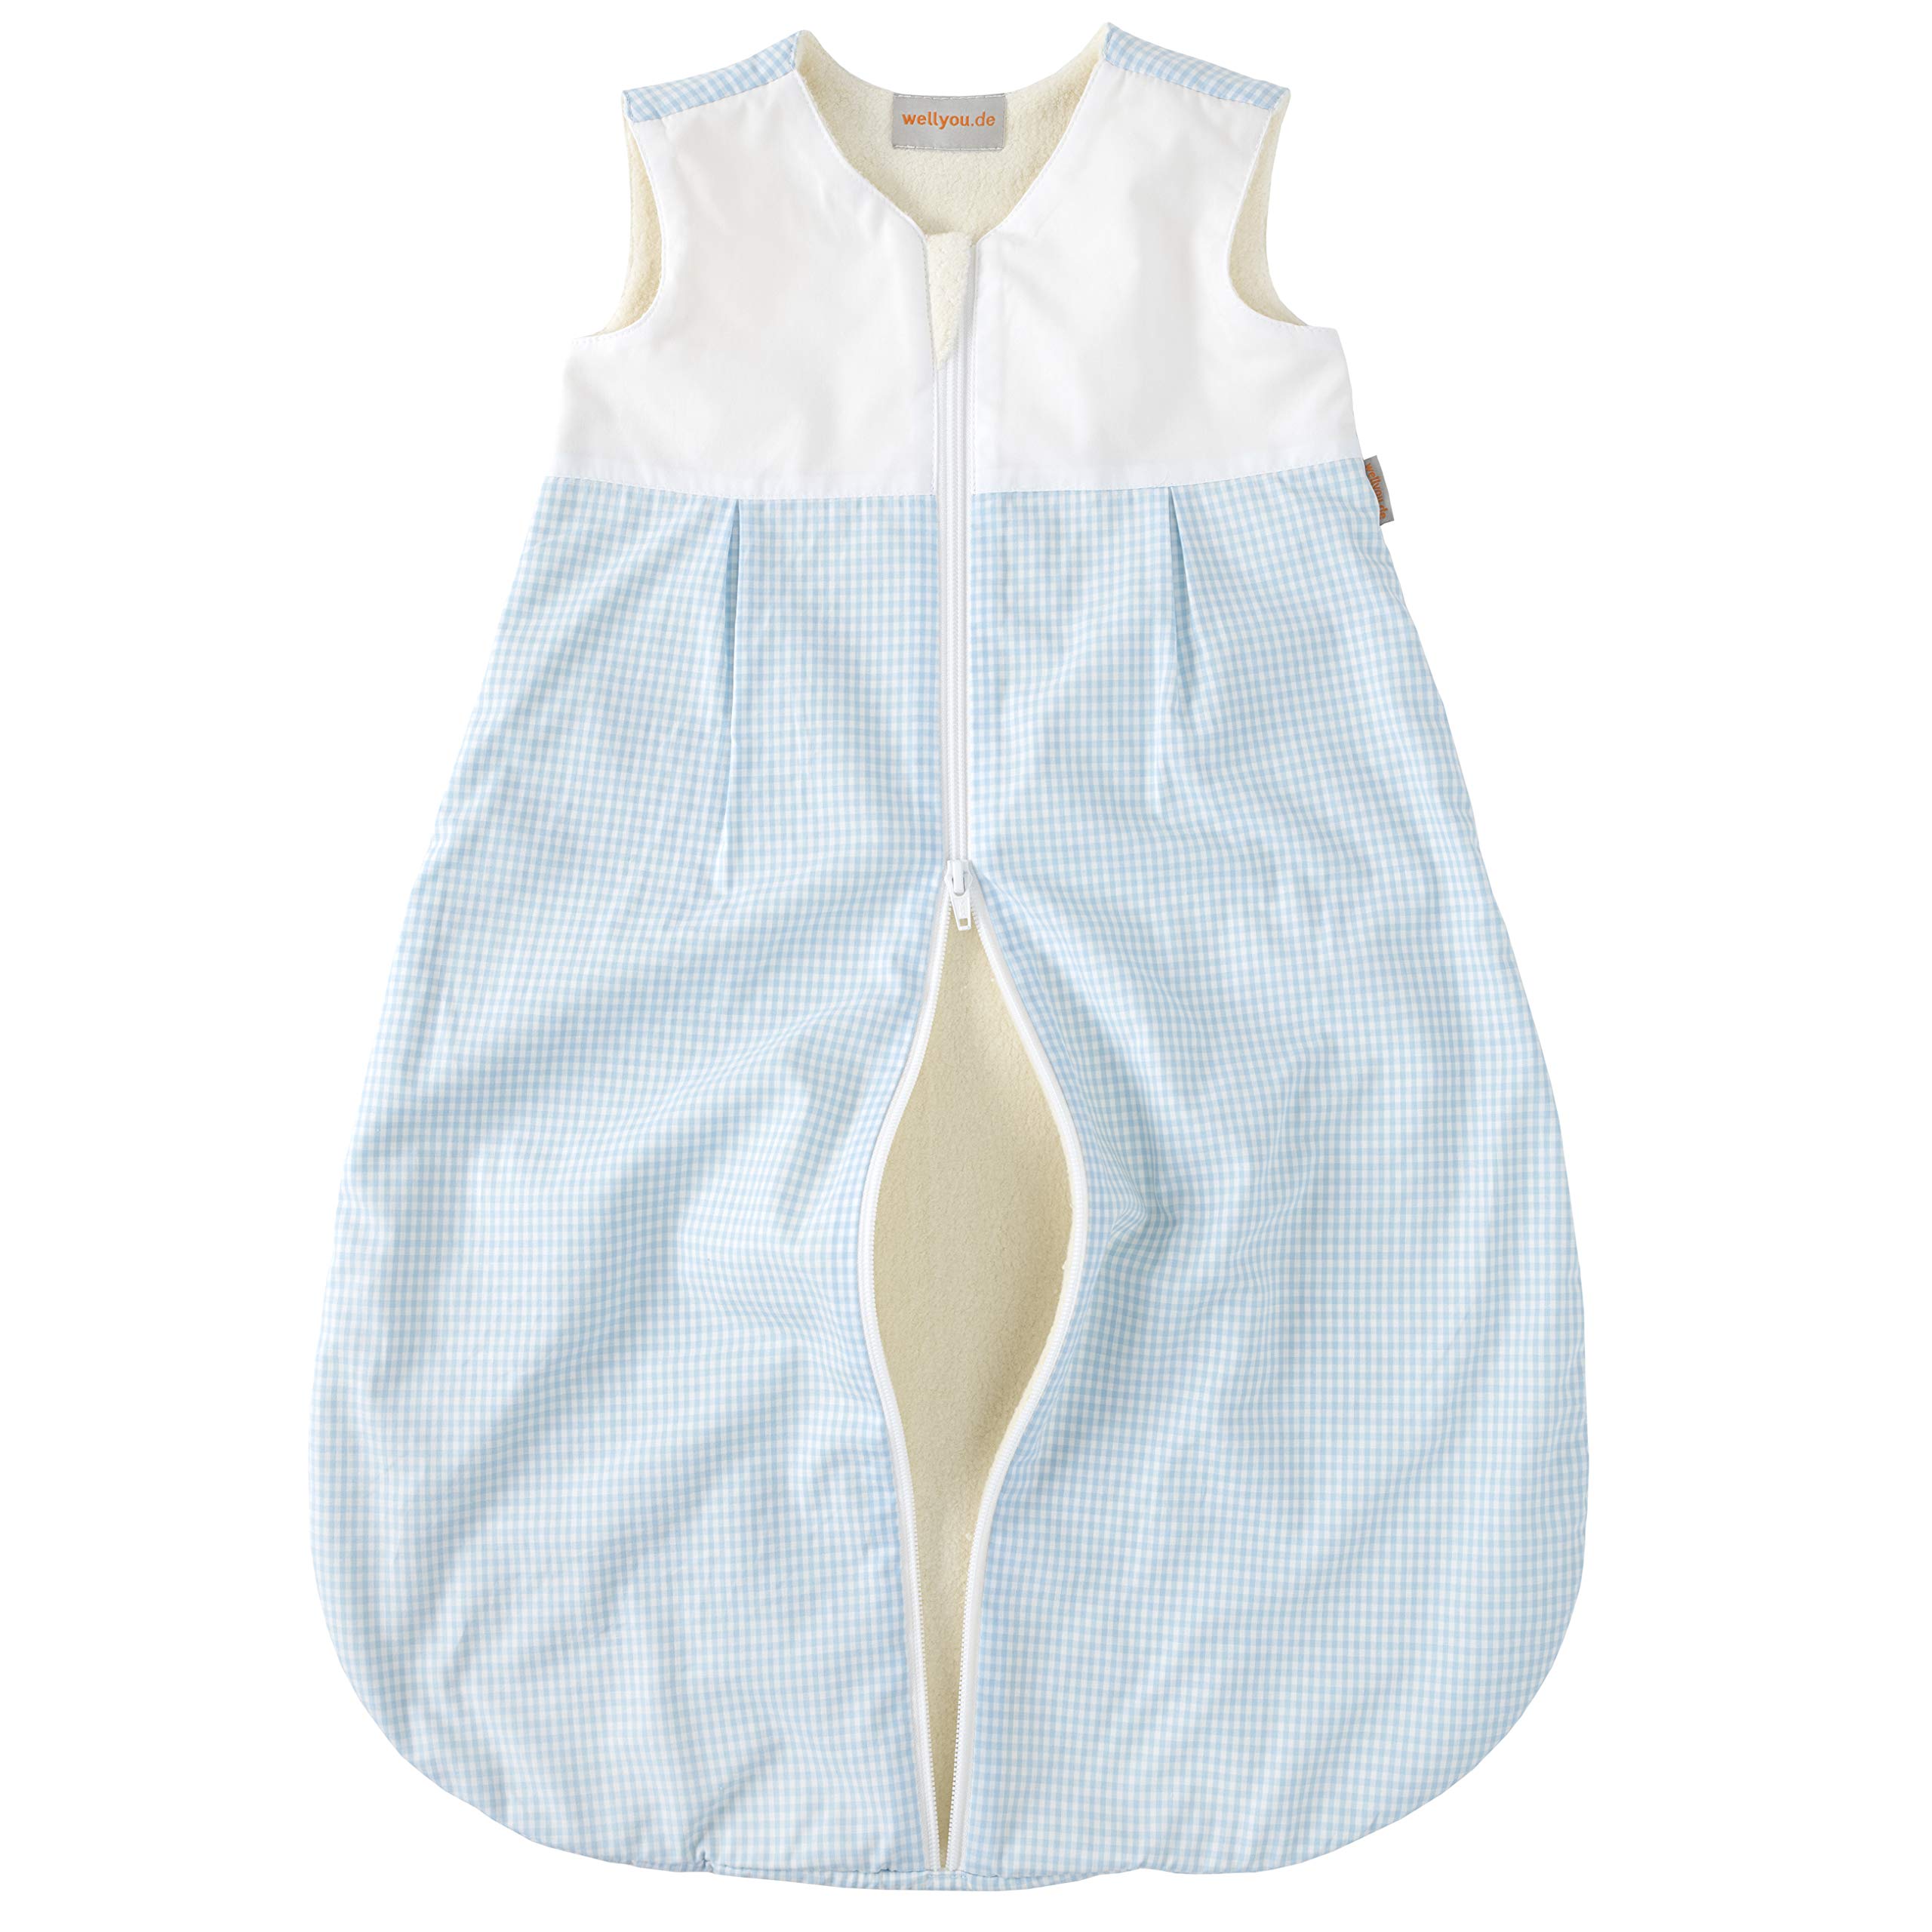 wellyou, Kinder-Baby-Schlafsack, mit Fleece gefüttert, hellblau-weiß Vichykaro, für Mädchen und Jungen, Größe 56-80